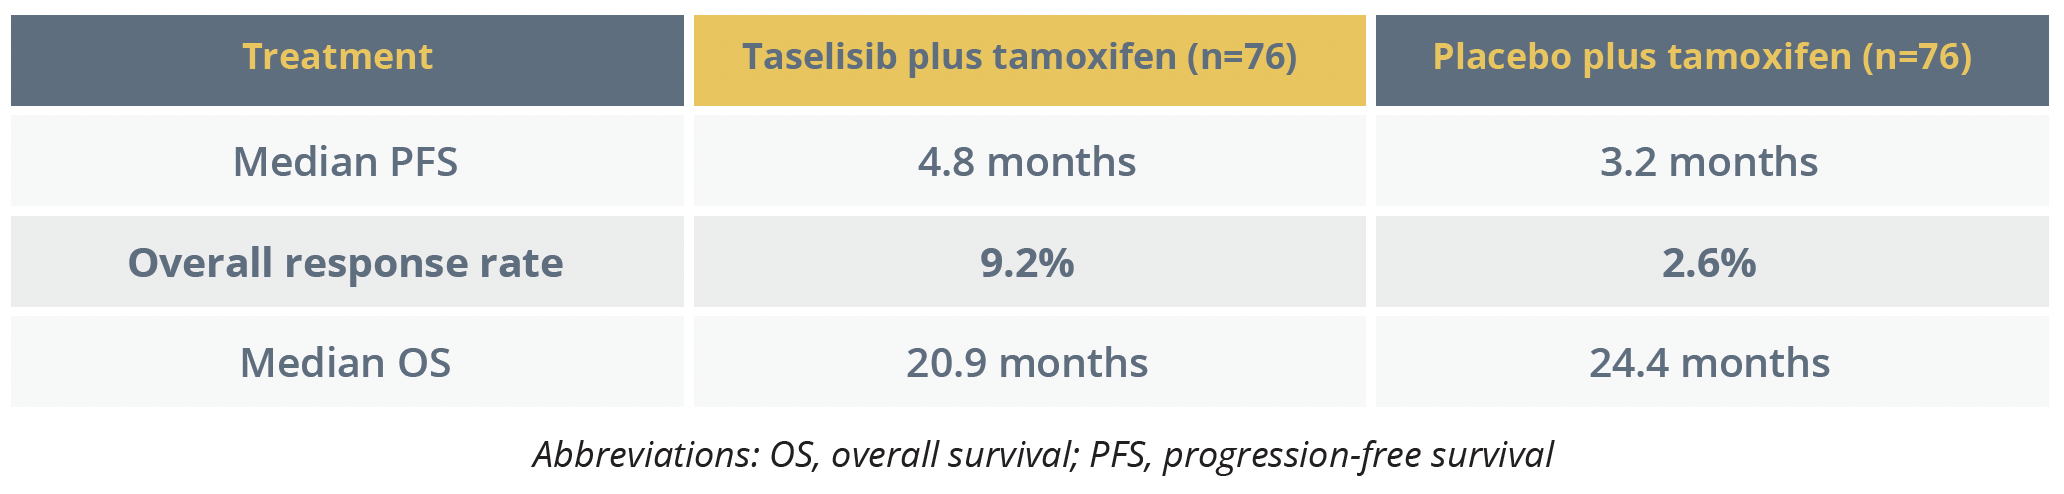 PFS and overall response benefits with taselisib plus tamoxifen over placebo plus tamoxifen